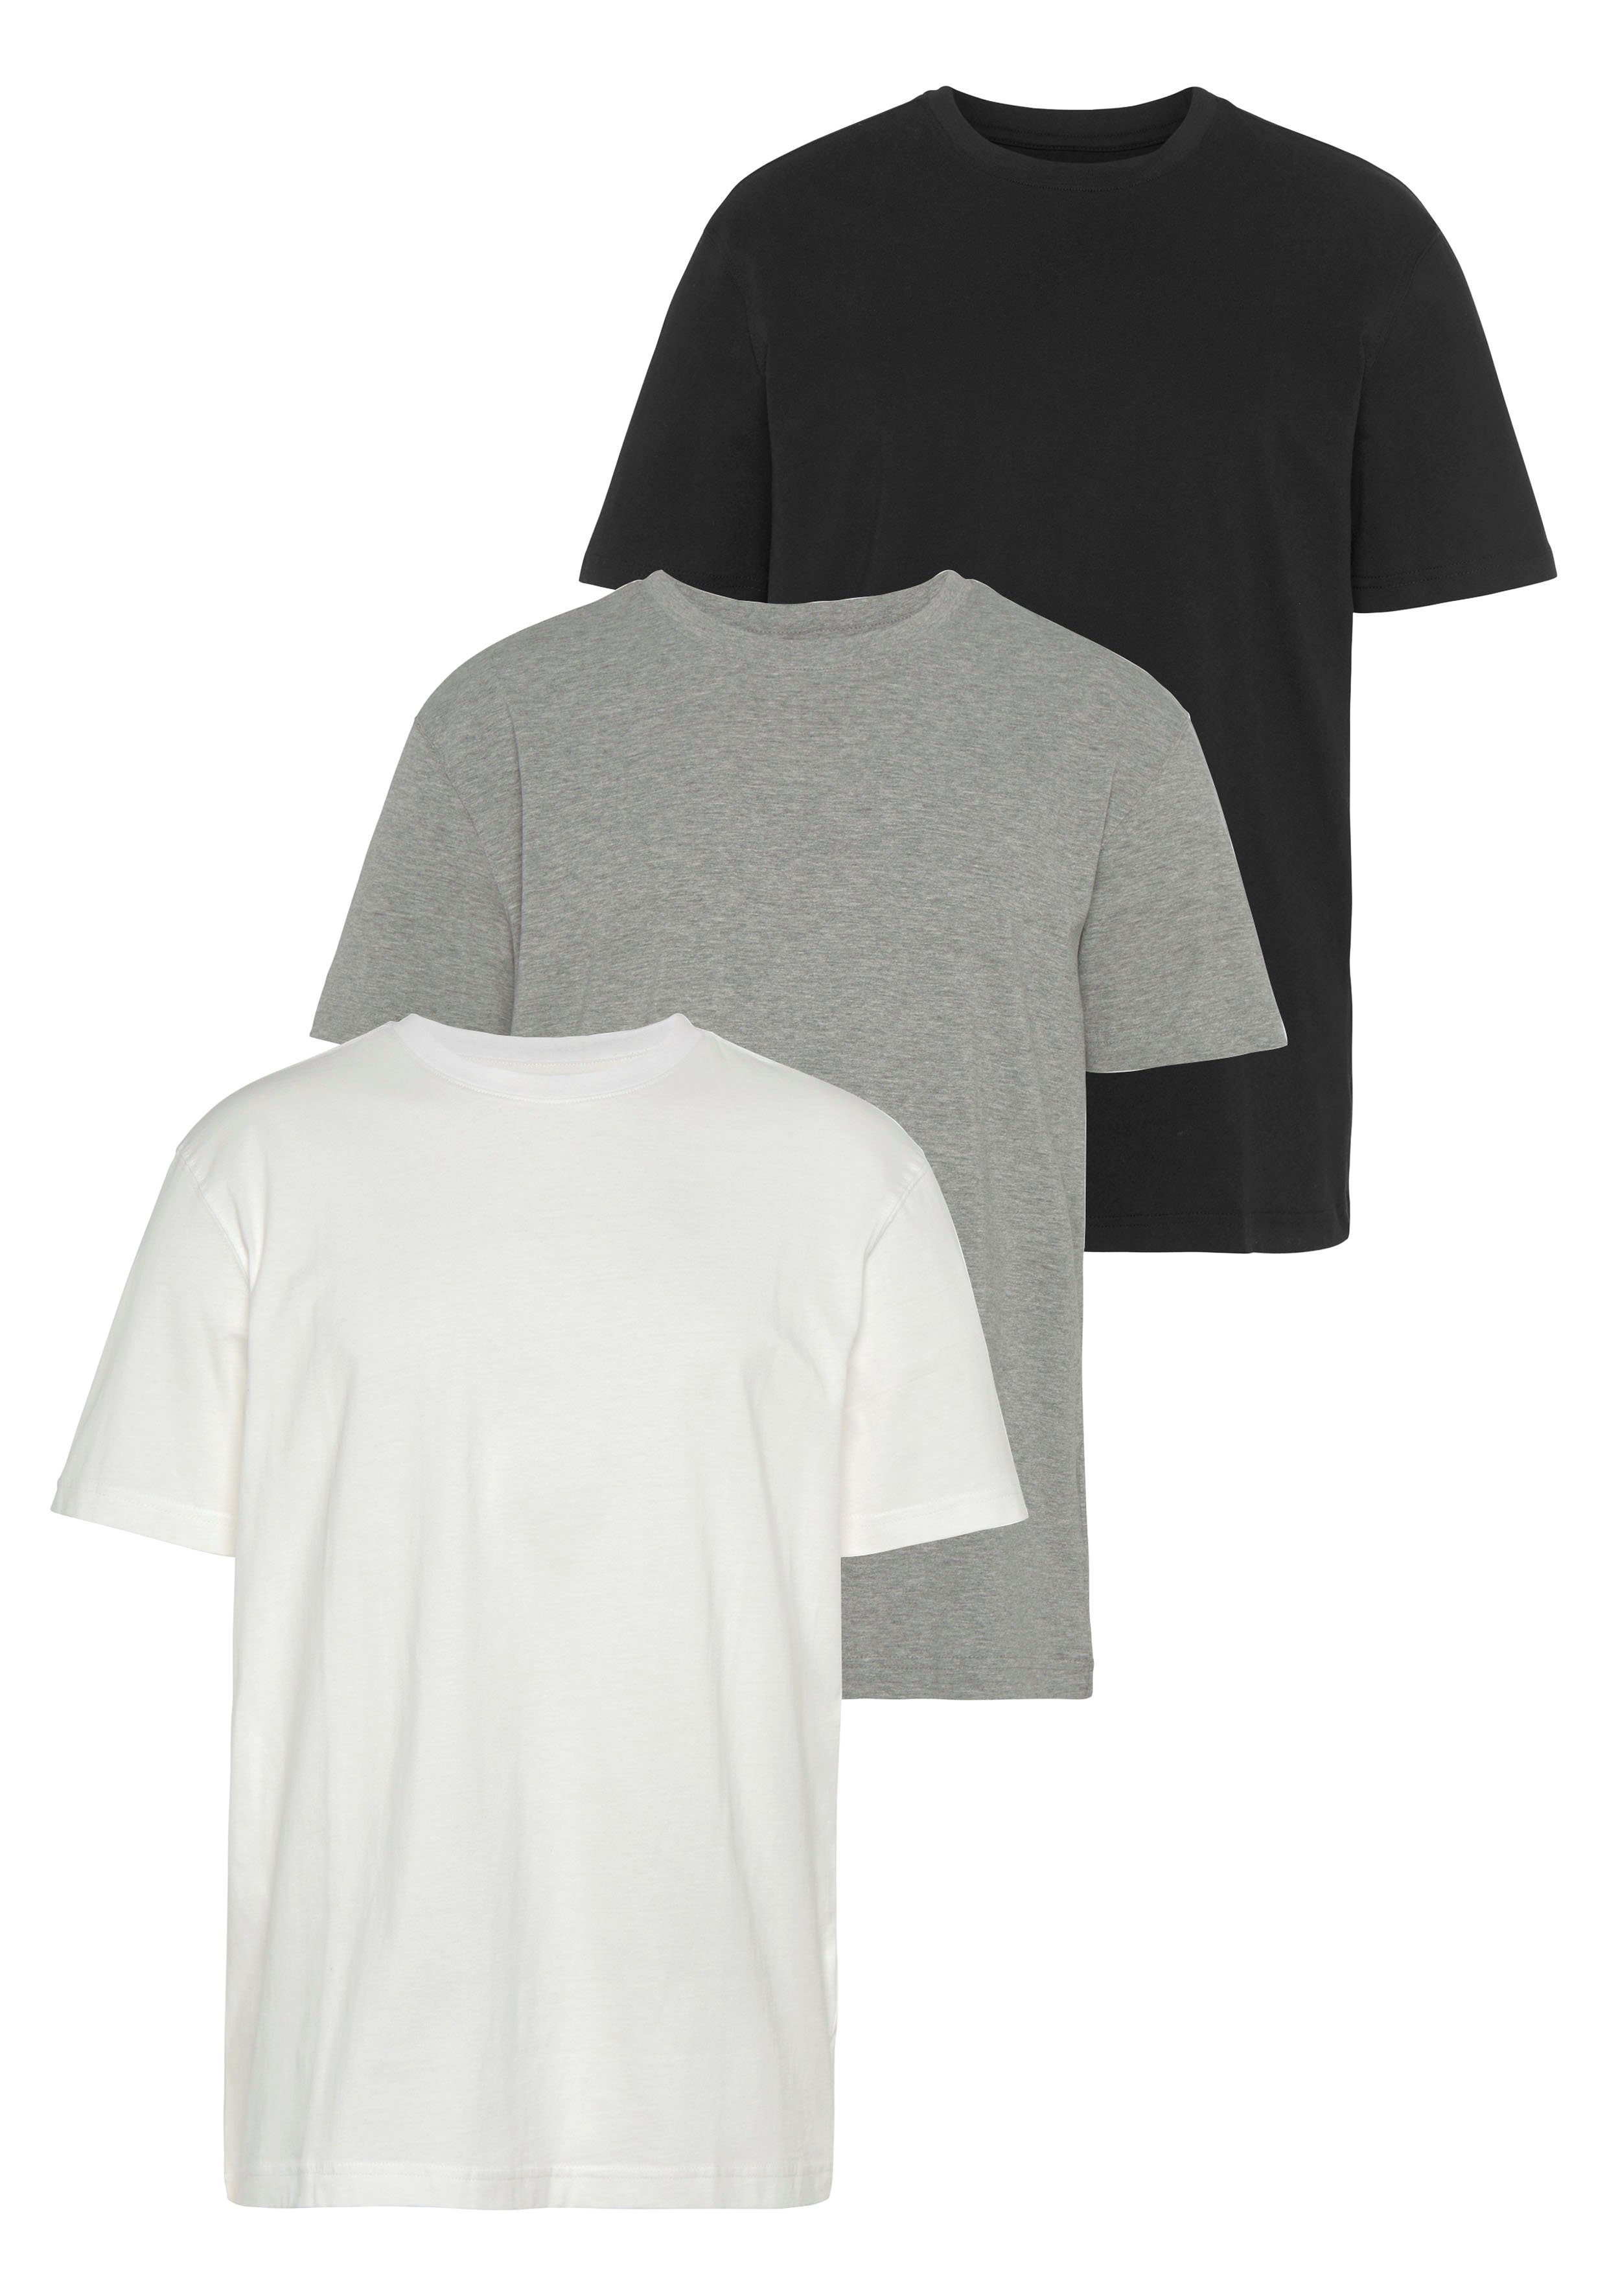 Man's World T-Shirt (Packung, 3-tlg., 3er-Pack) perfekt als Unterzieh- T-shirt weiss-grau-mel.-schwarz